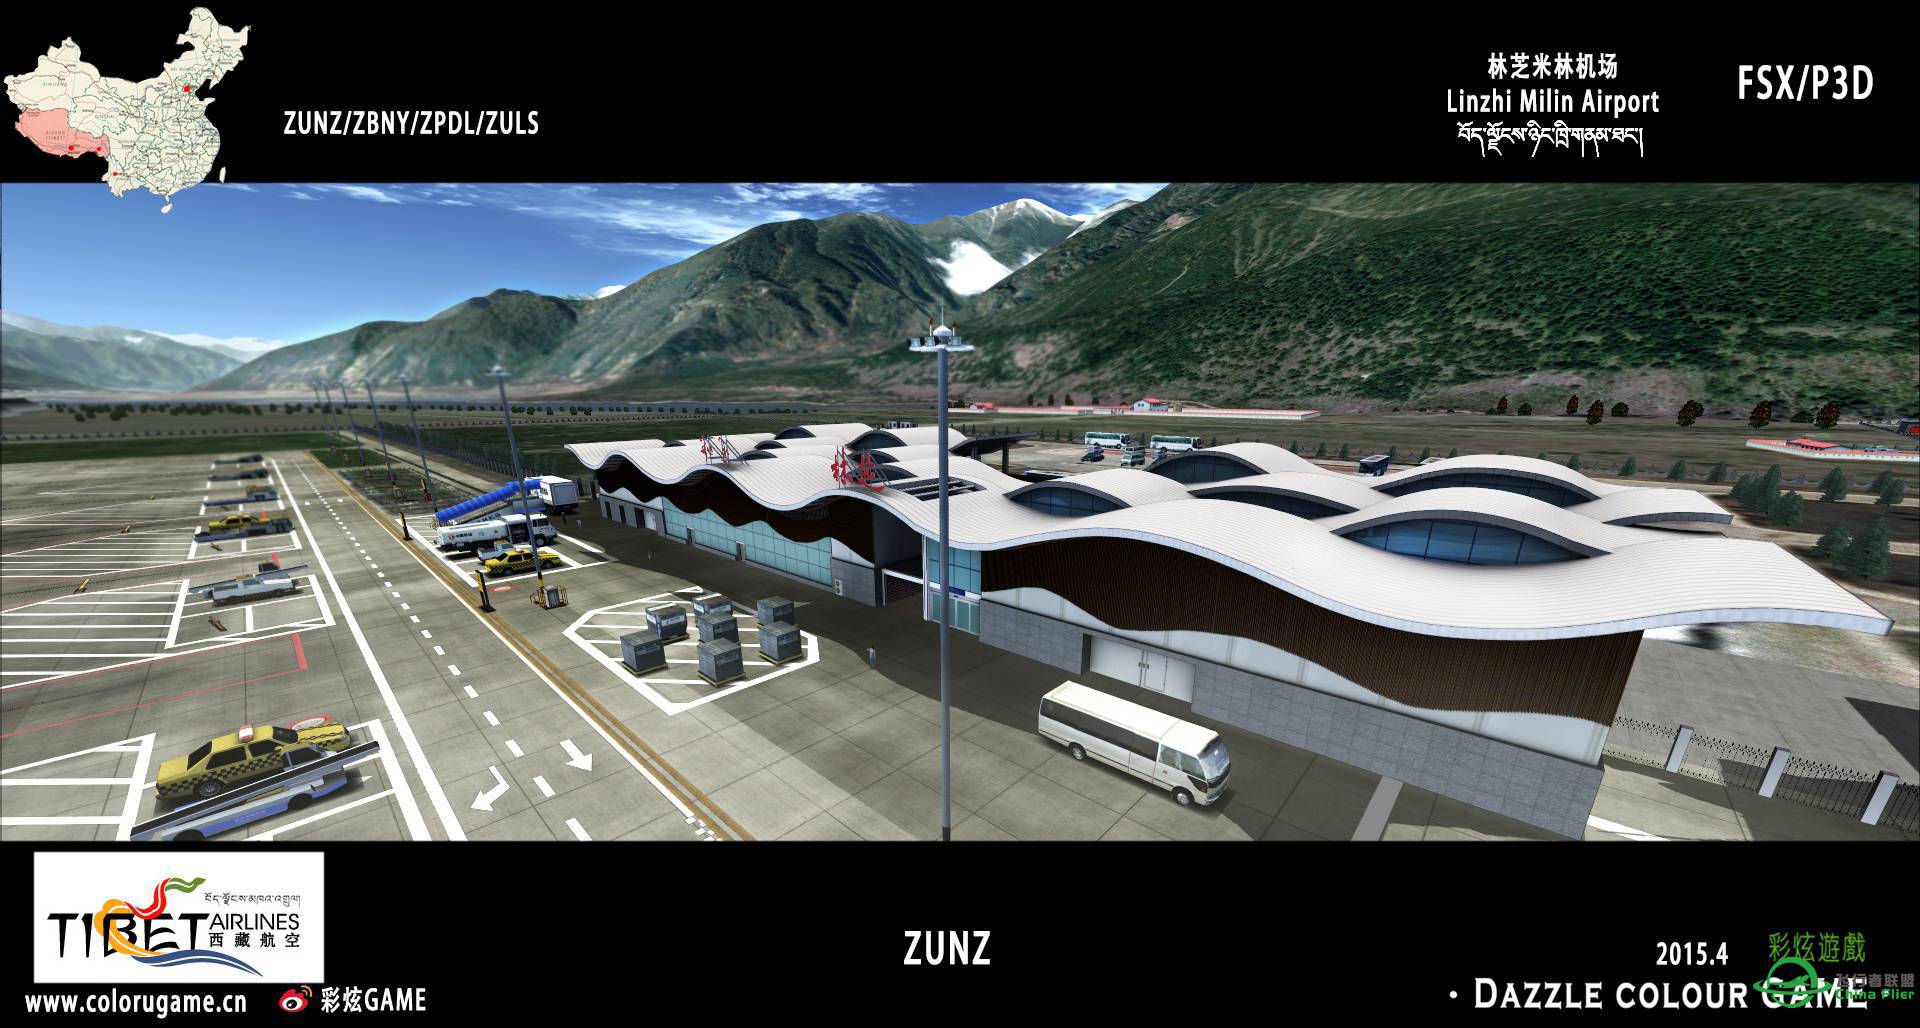 彩炫地景：林芝米林机场（ZUNZ）正式发布！-2108 